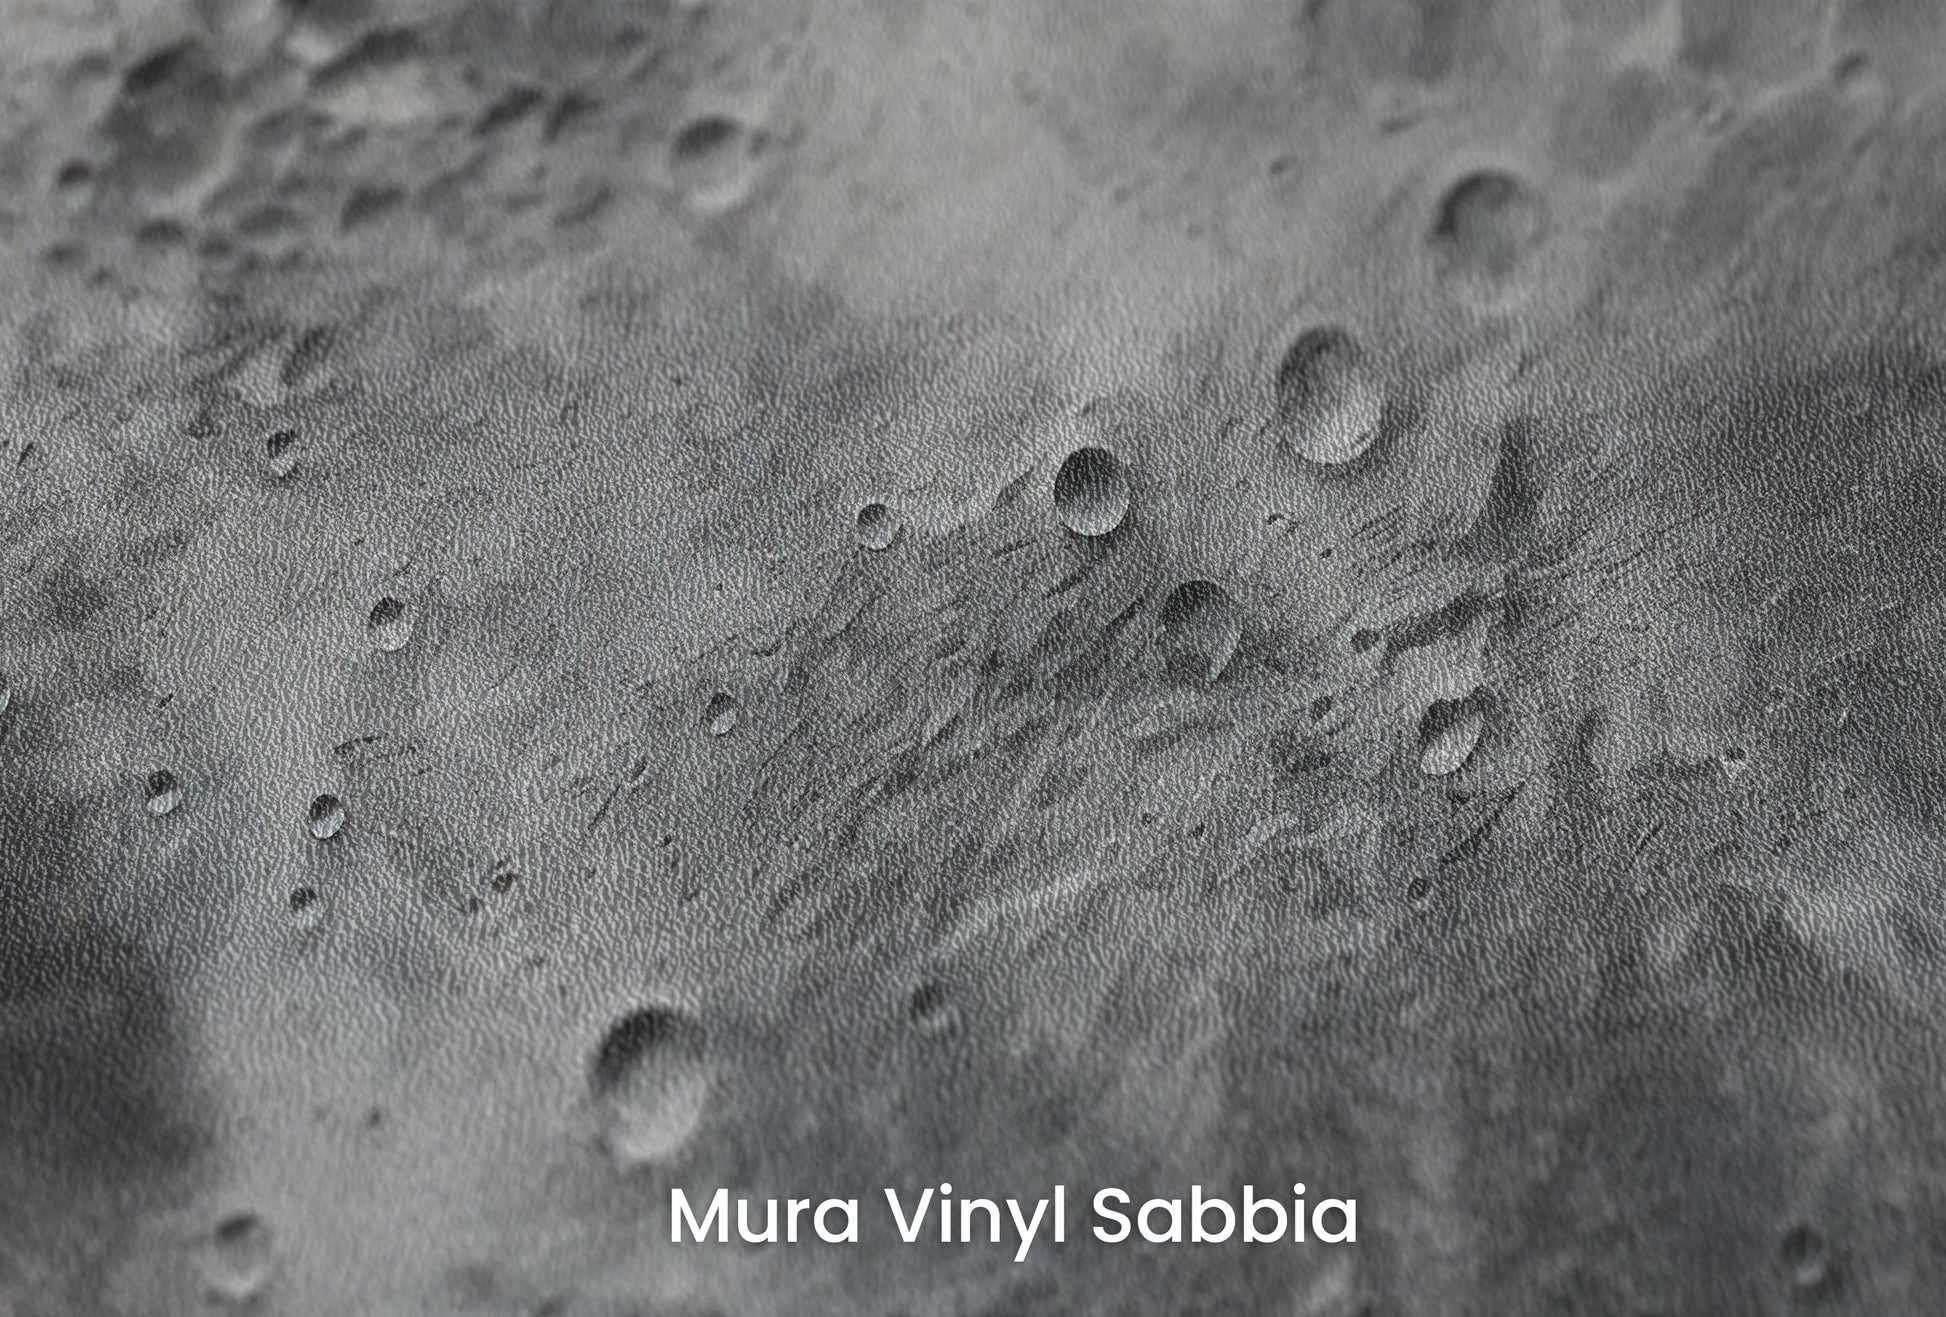 Zbliżenie na artystyczną fototapetę o nazwie Mercury's Surface na podłożu Mura Vinyl Sabbia struktura grubego ziarna piasku.